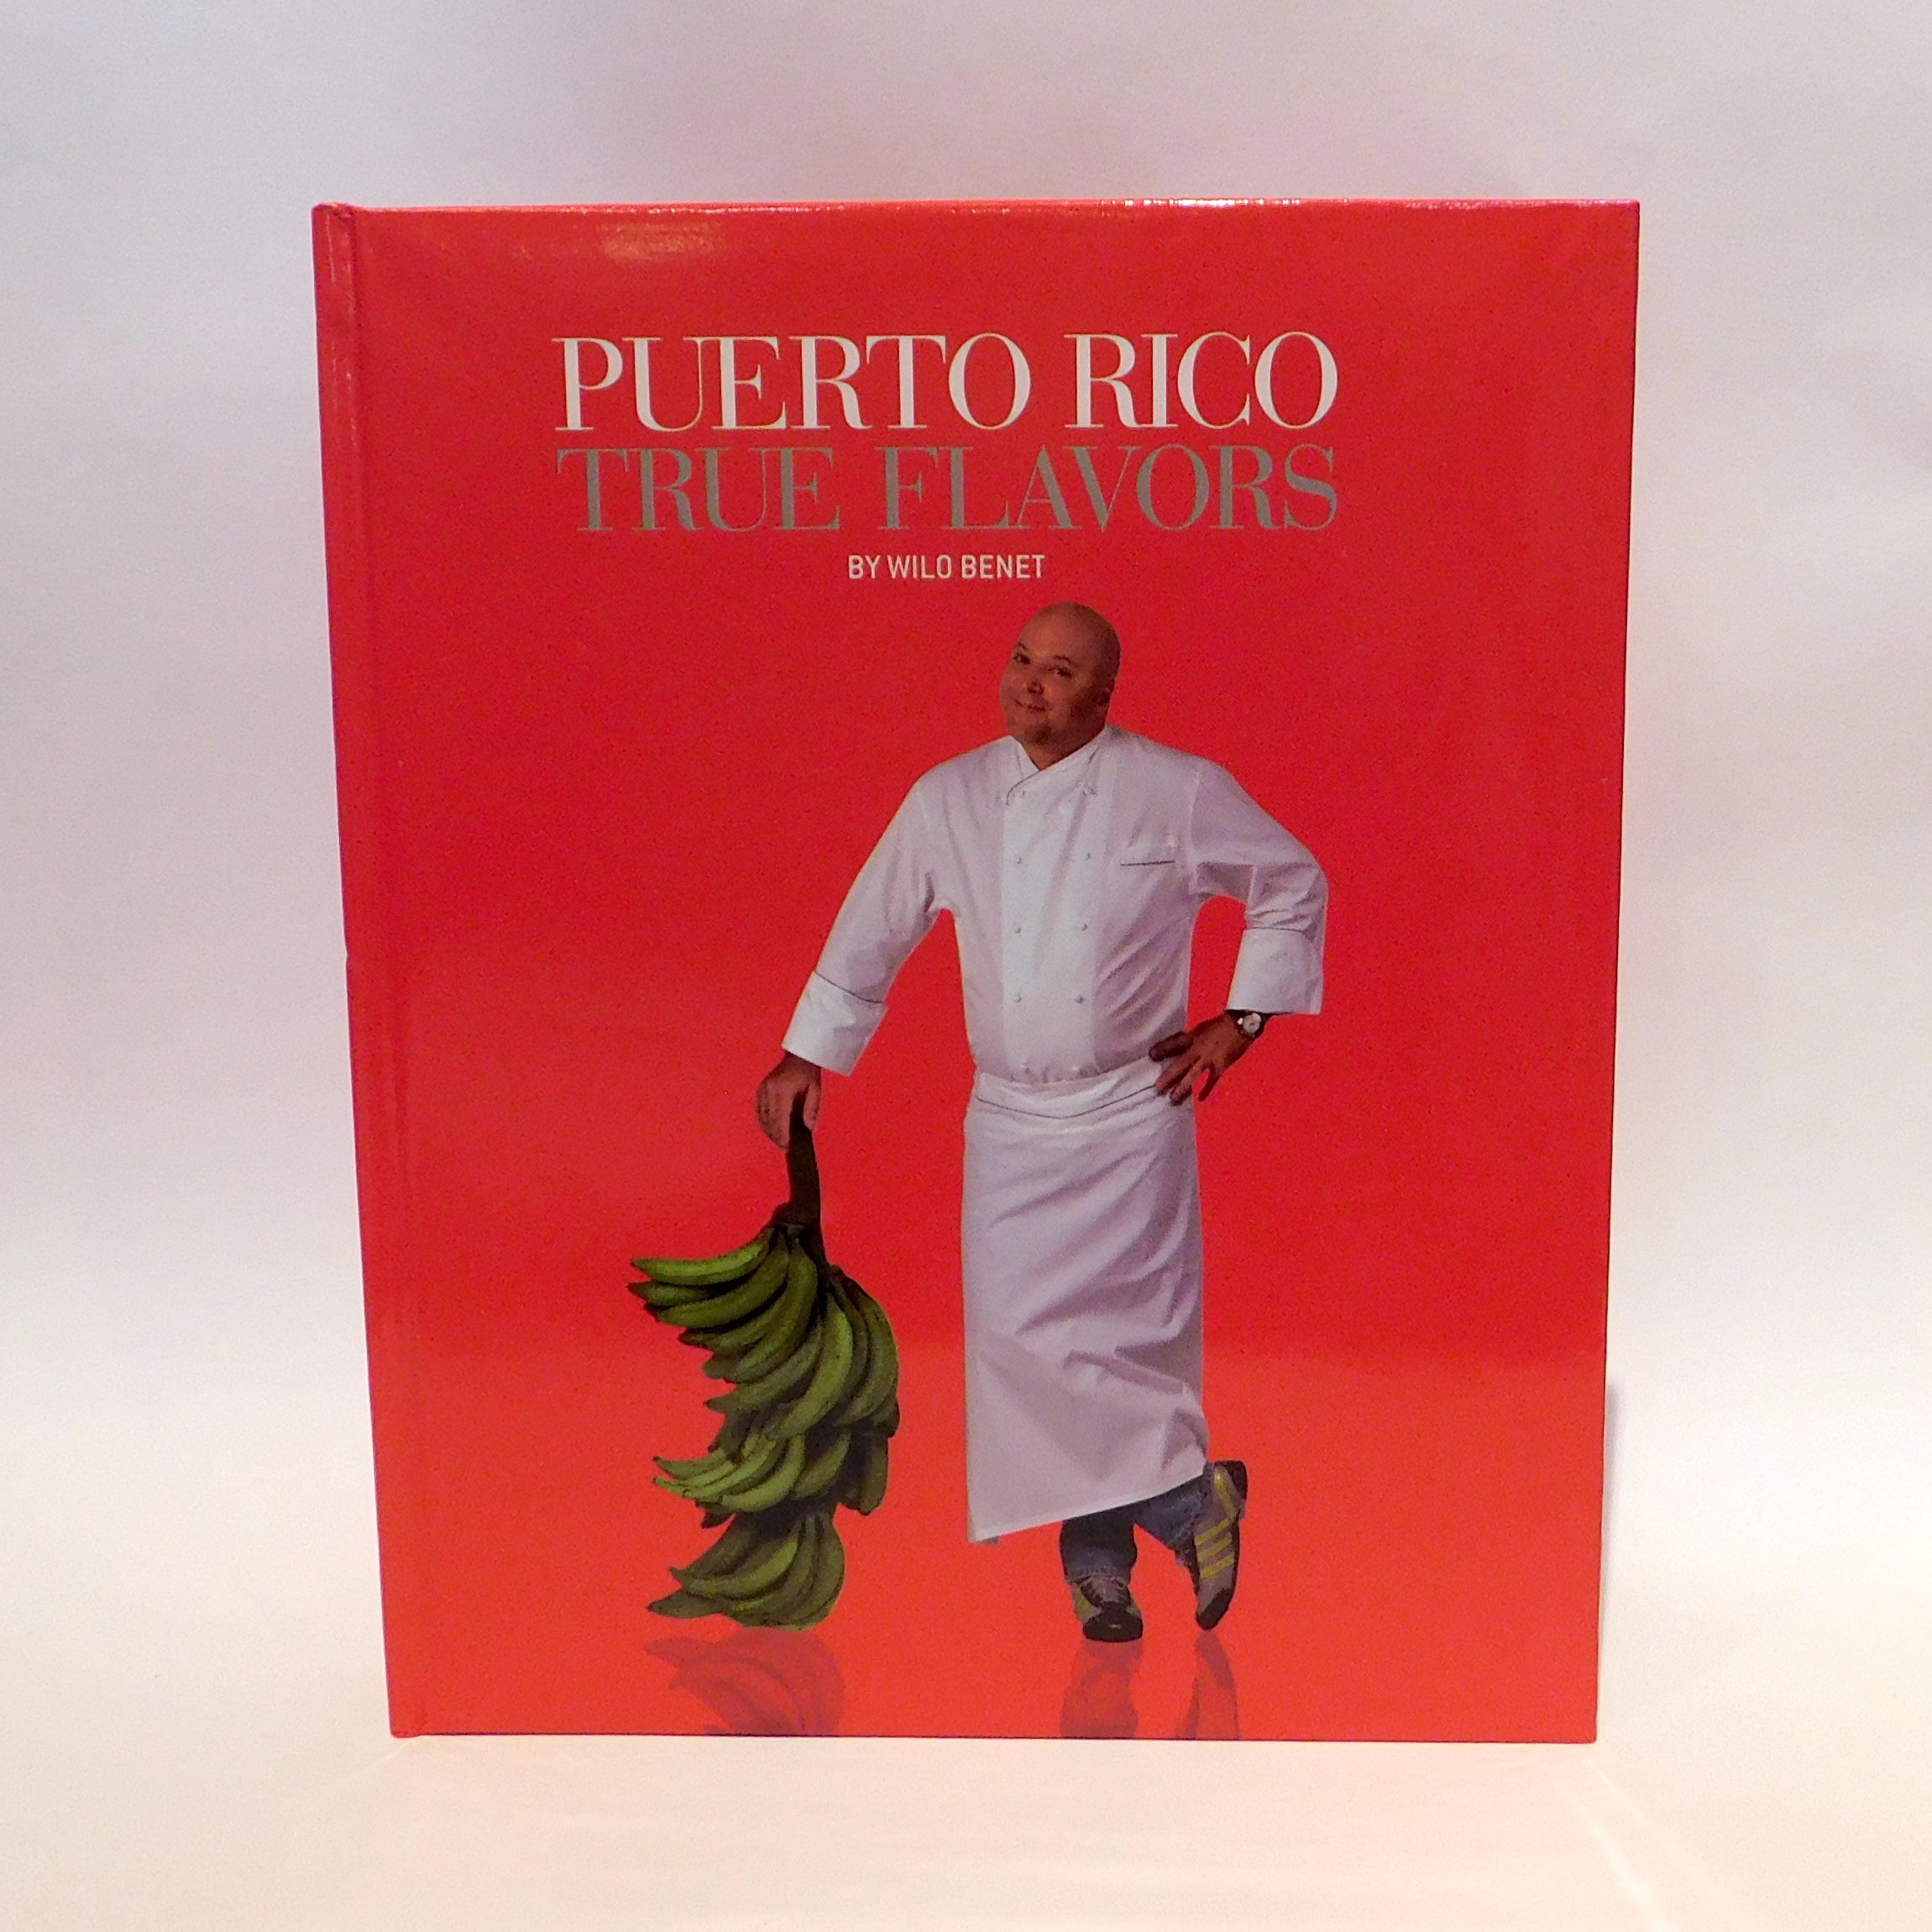 Puerto Rico True Flavors by Wilo Benet